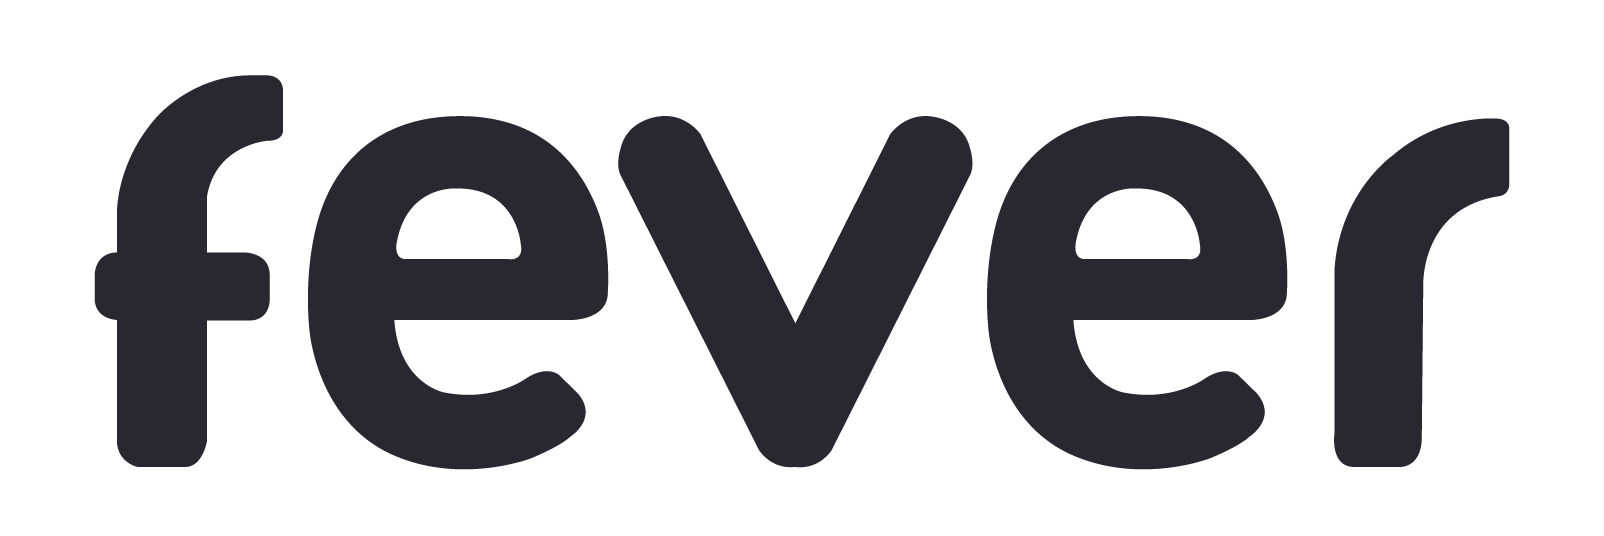 Fever Logo - Job offers in Fever startup in Europe - JobFluent